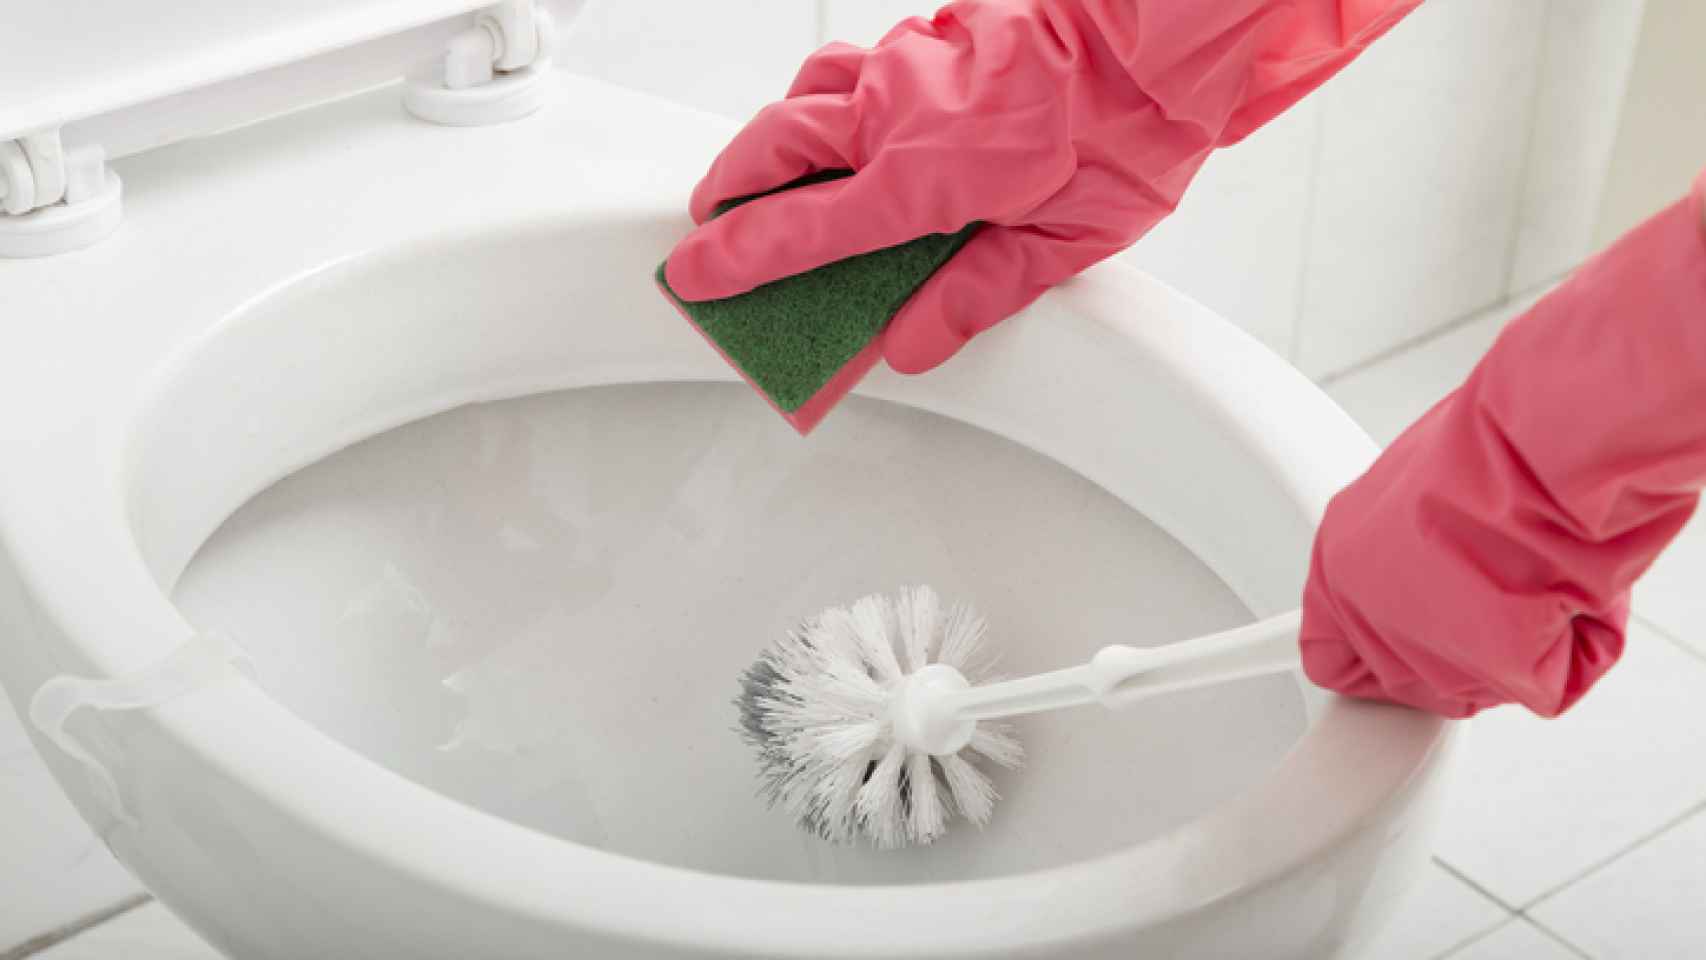 Trucos caseros para limpiar y desinfectar el inodoro.